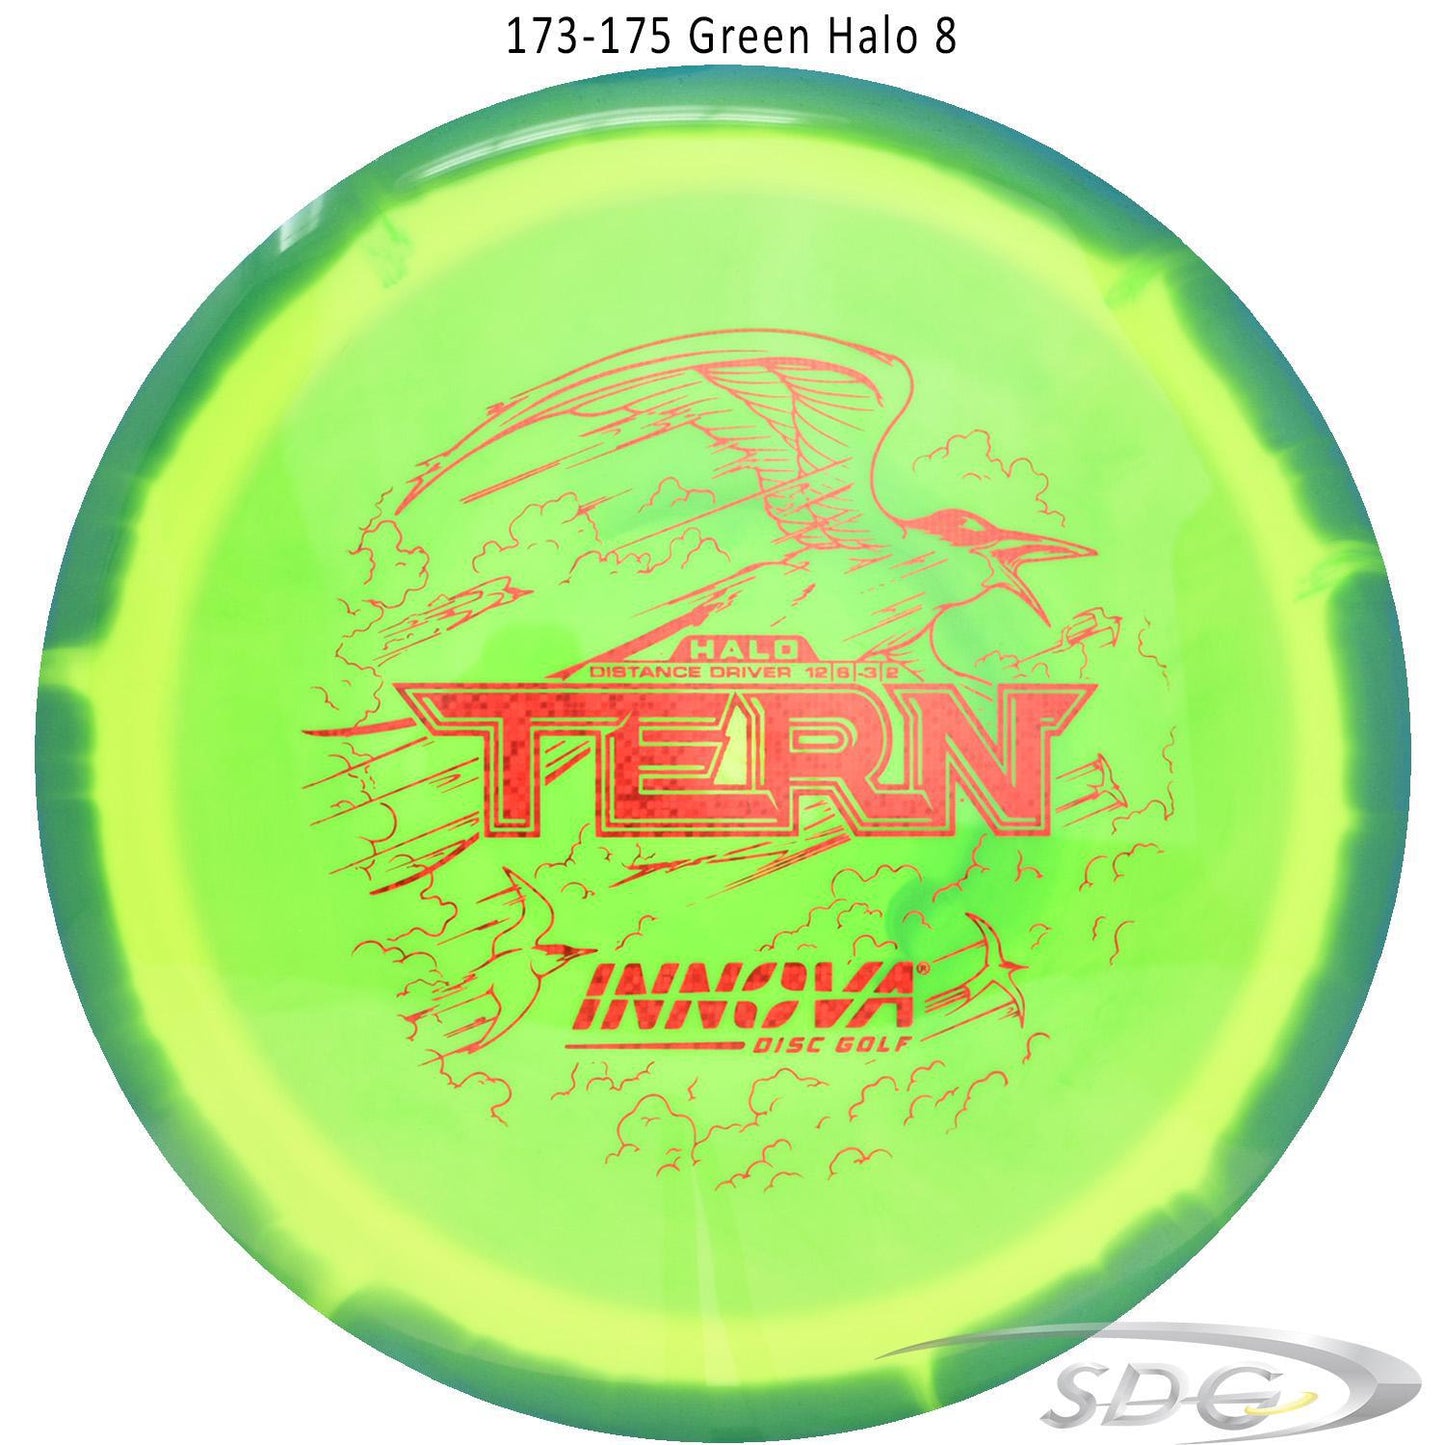 innova-halo-star-tern-disc-golf-distance-driver 173-175 Green Halo 8 